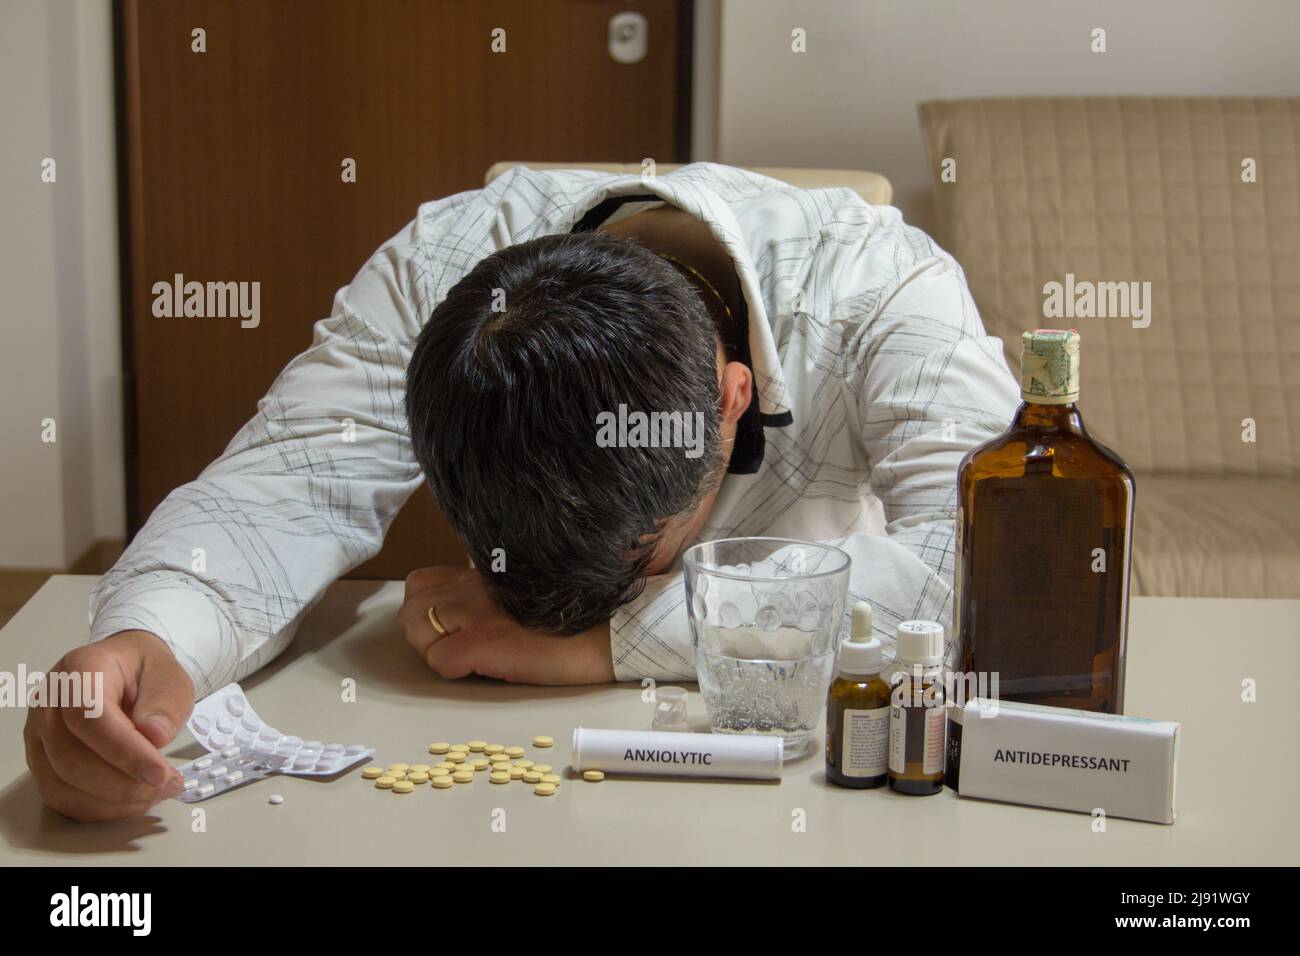 Image d'un homme dormant avec sa tête reposant sur la table après avoir consommé de l'alcool, des anxiolytiques et des antidépresseurs. Banque D'Images